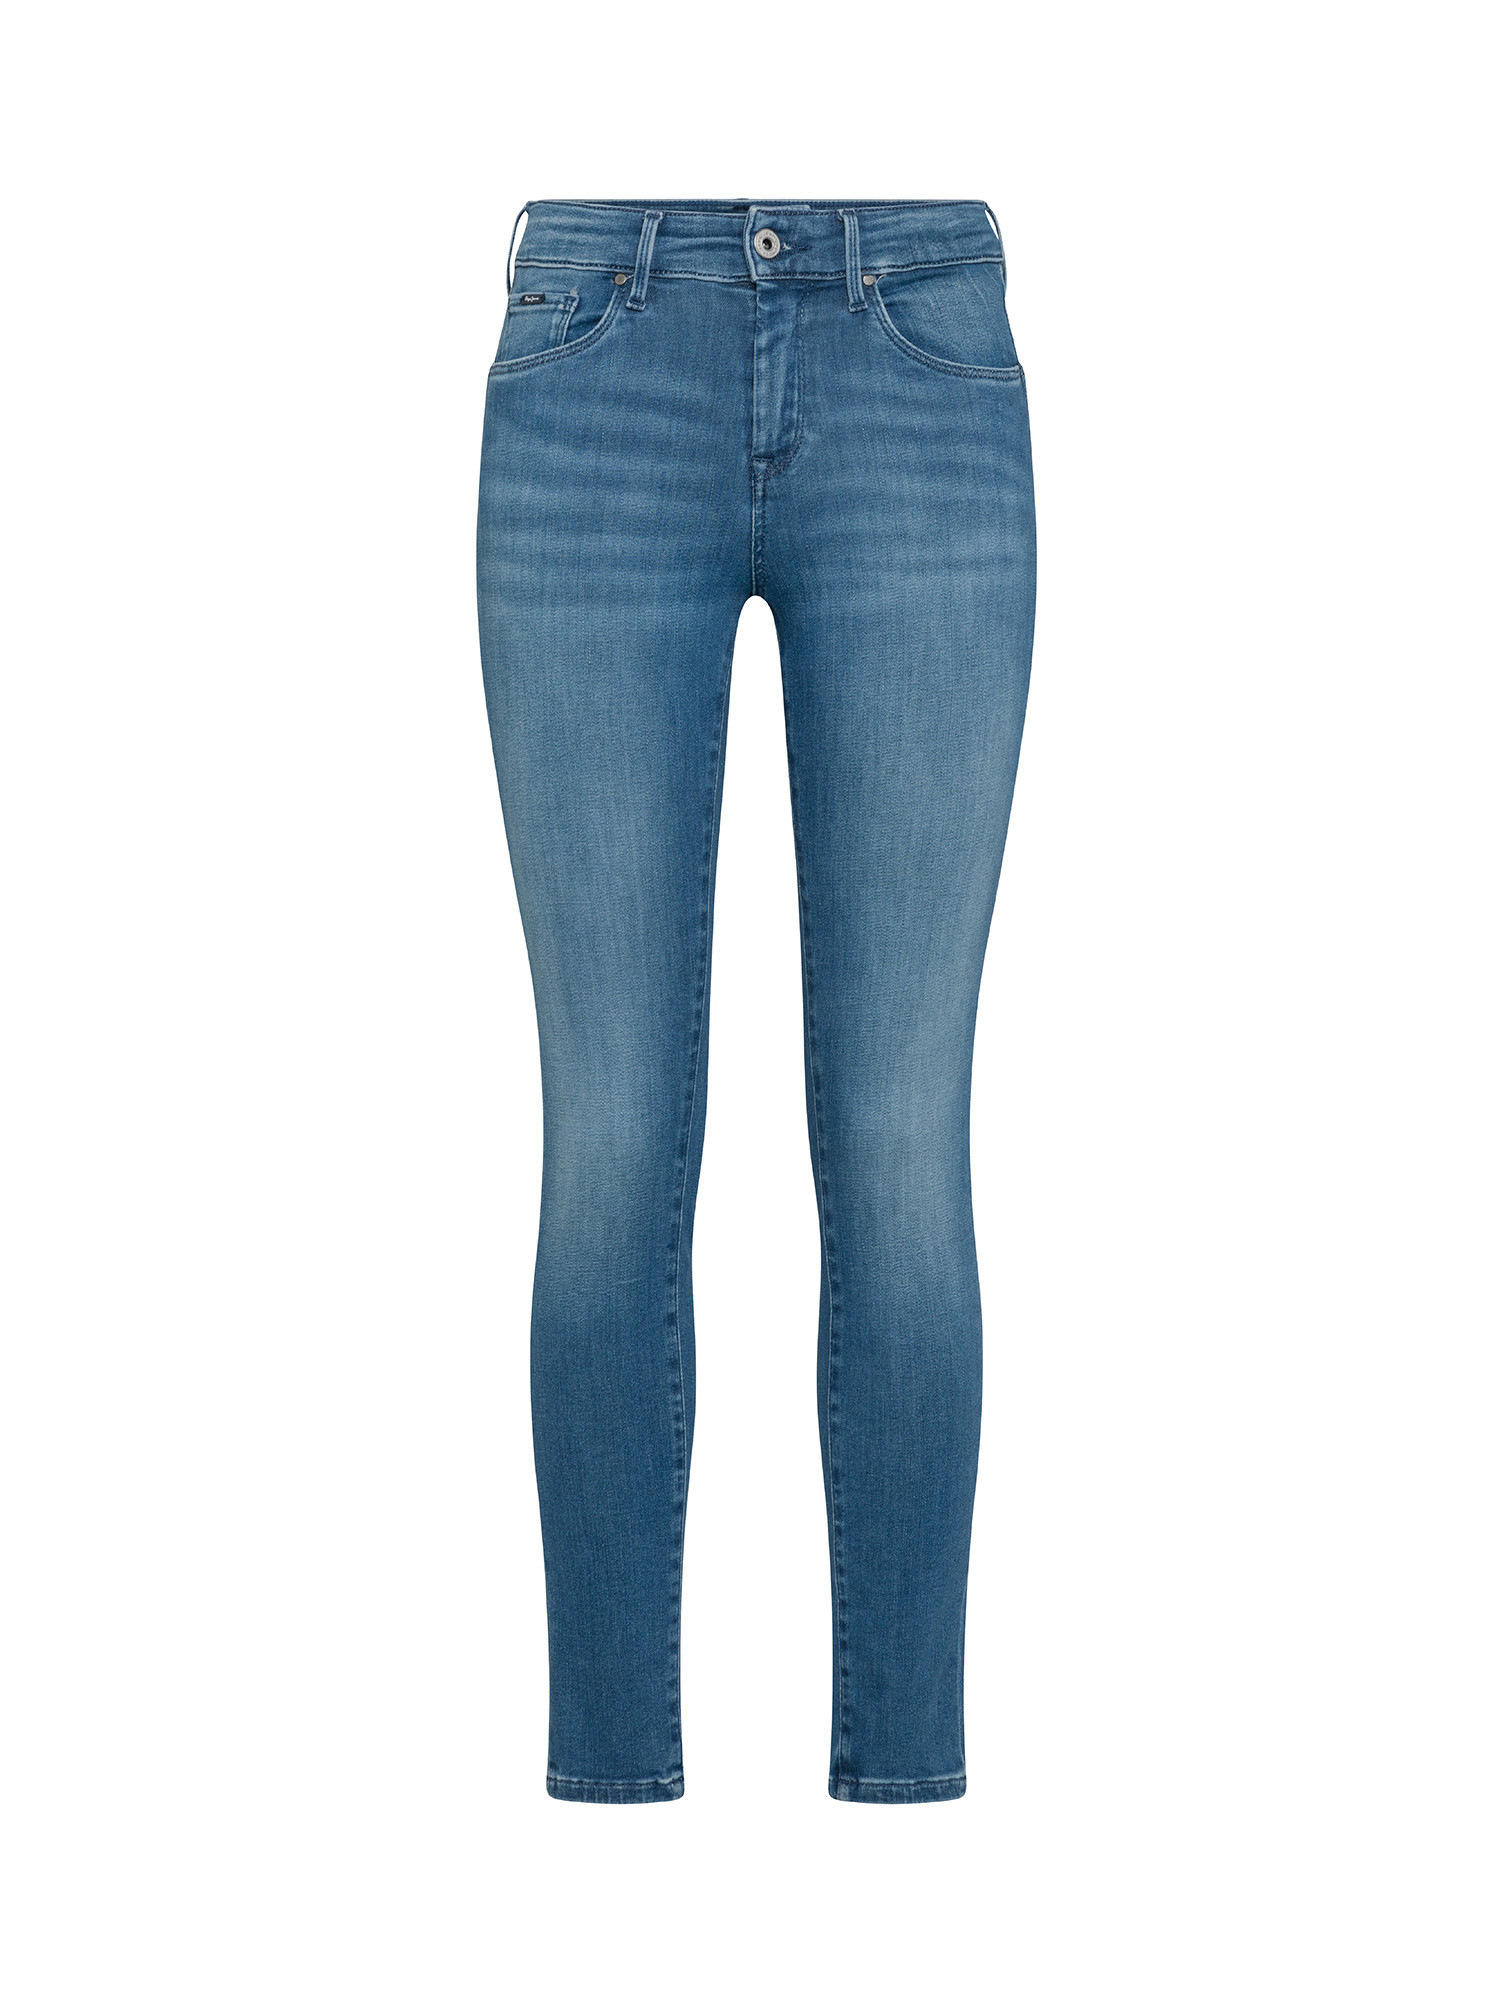 Pepe Jeans - Five pocket jeans, Denim, large image number 0